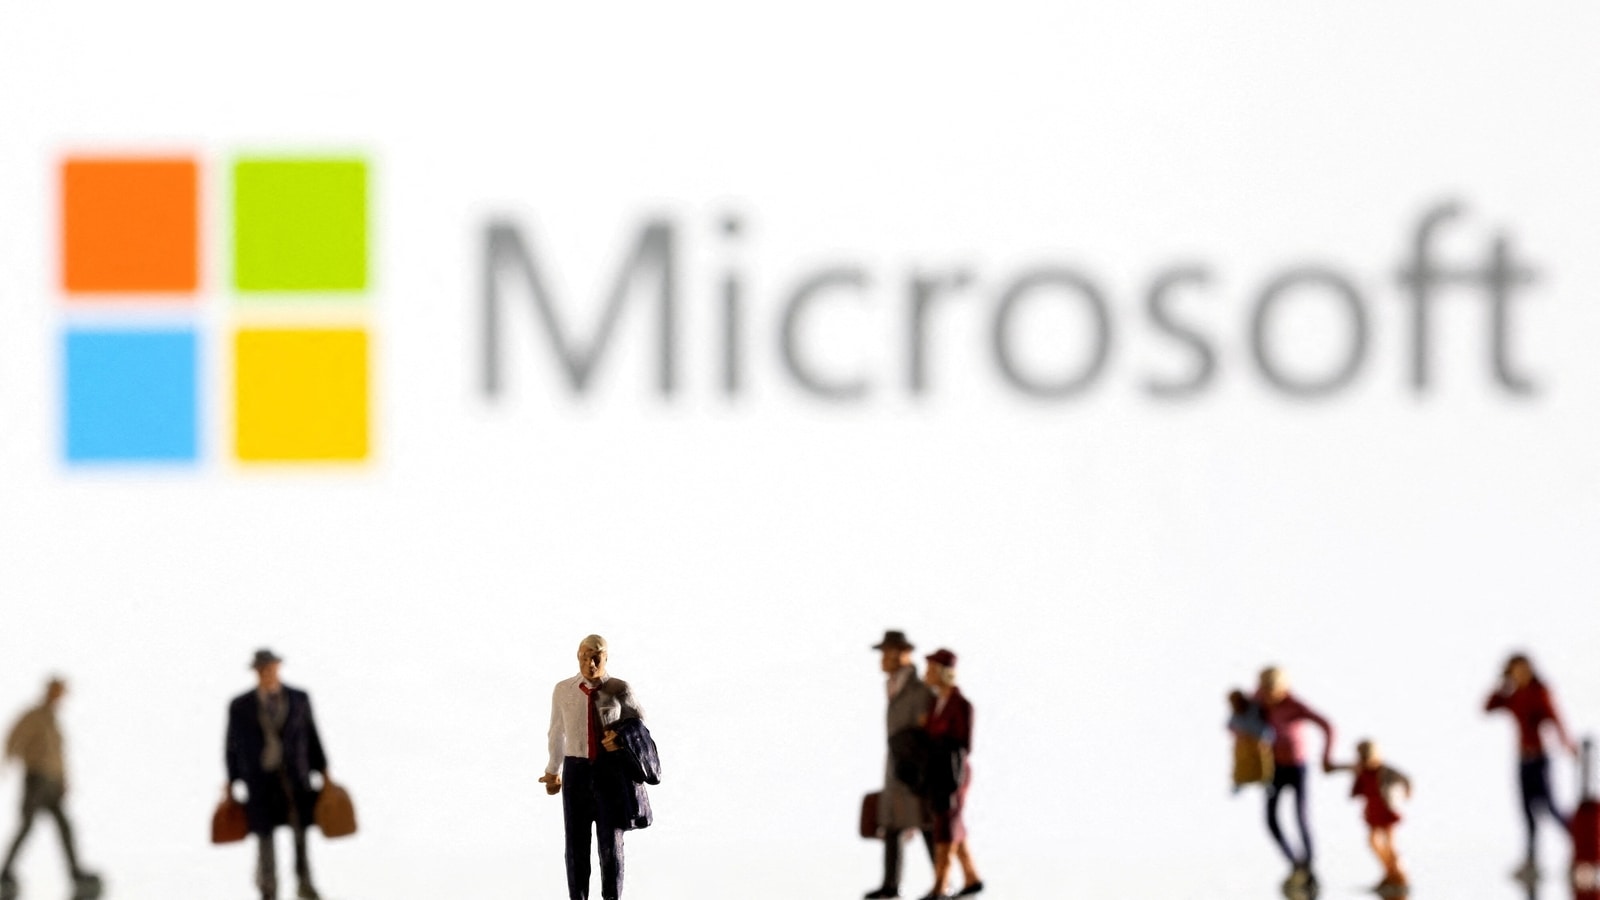 Microsoft mengumumkan kursus keterampilan Kecerdasan Umum gratis untuk memberdayakan pelajar